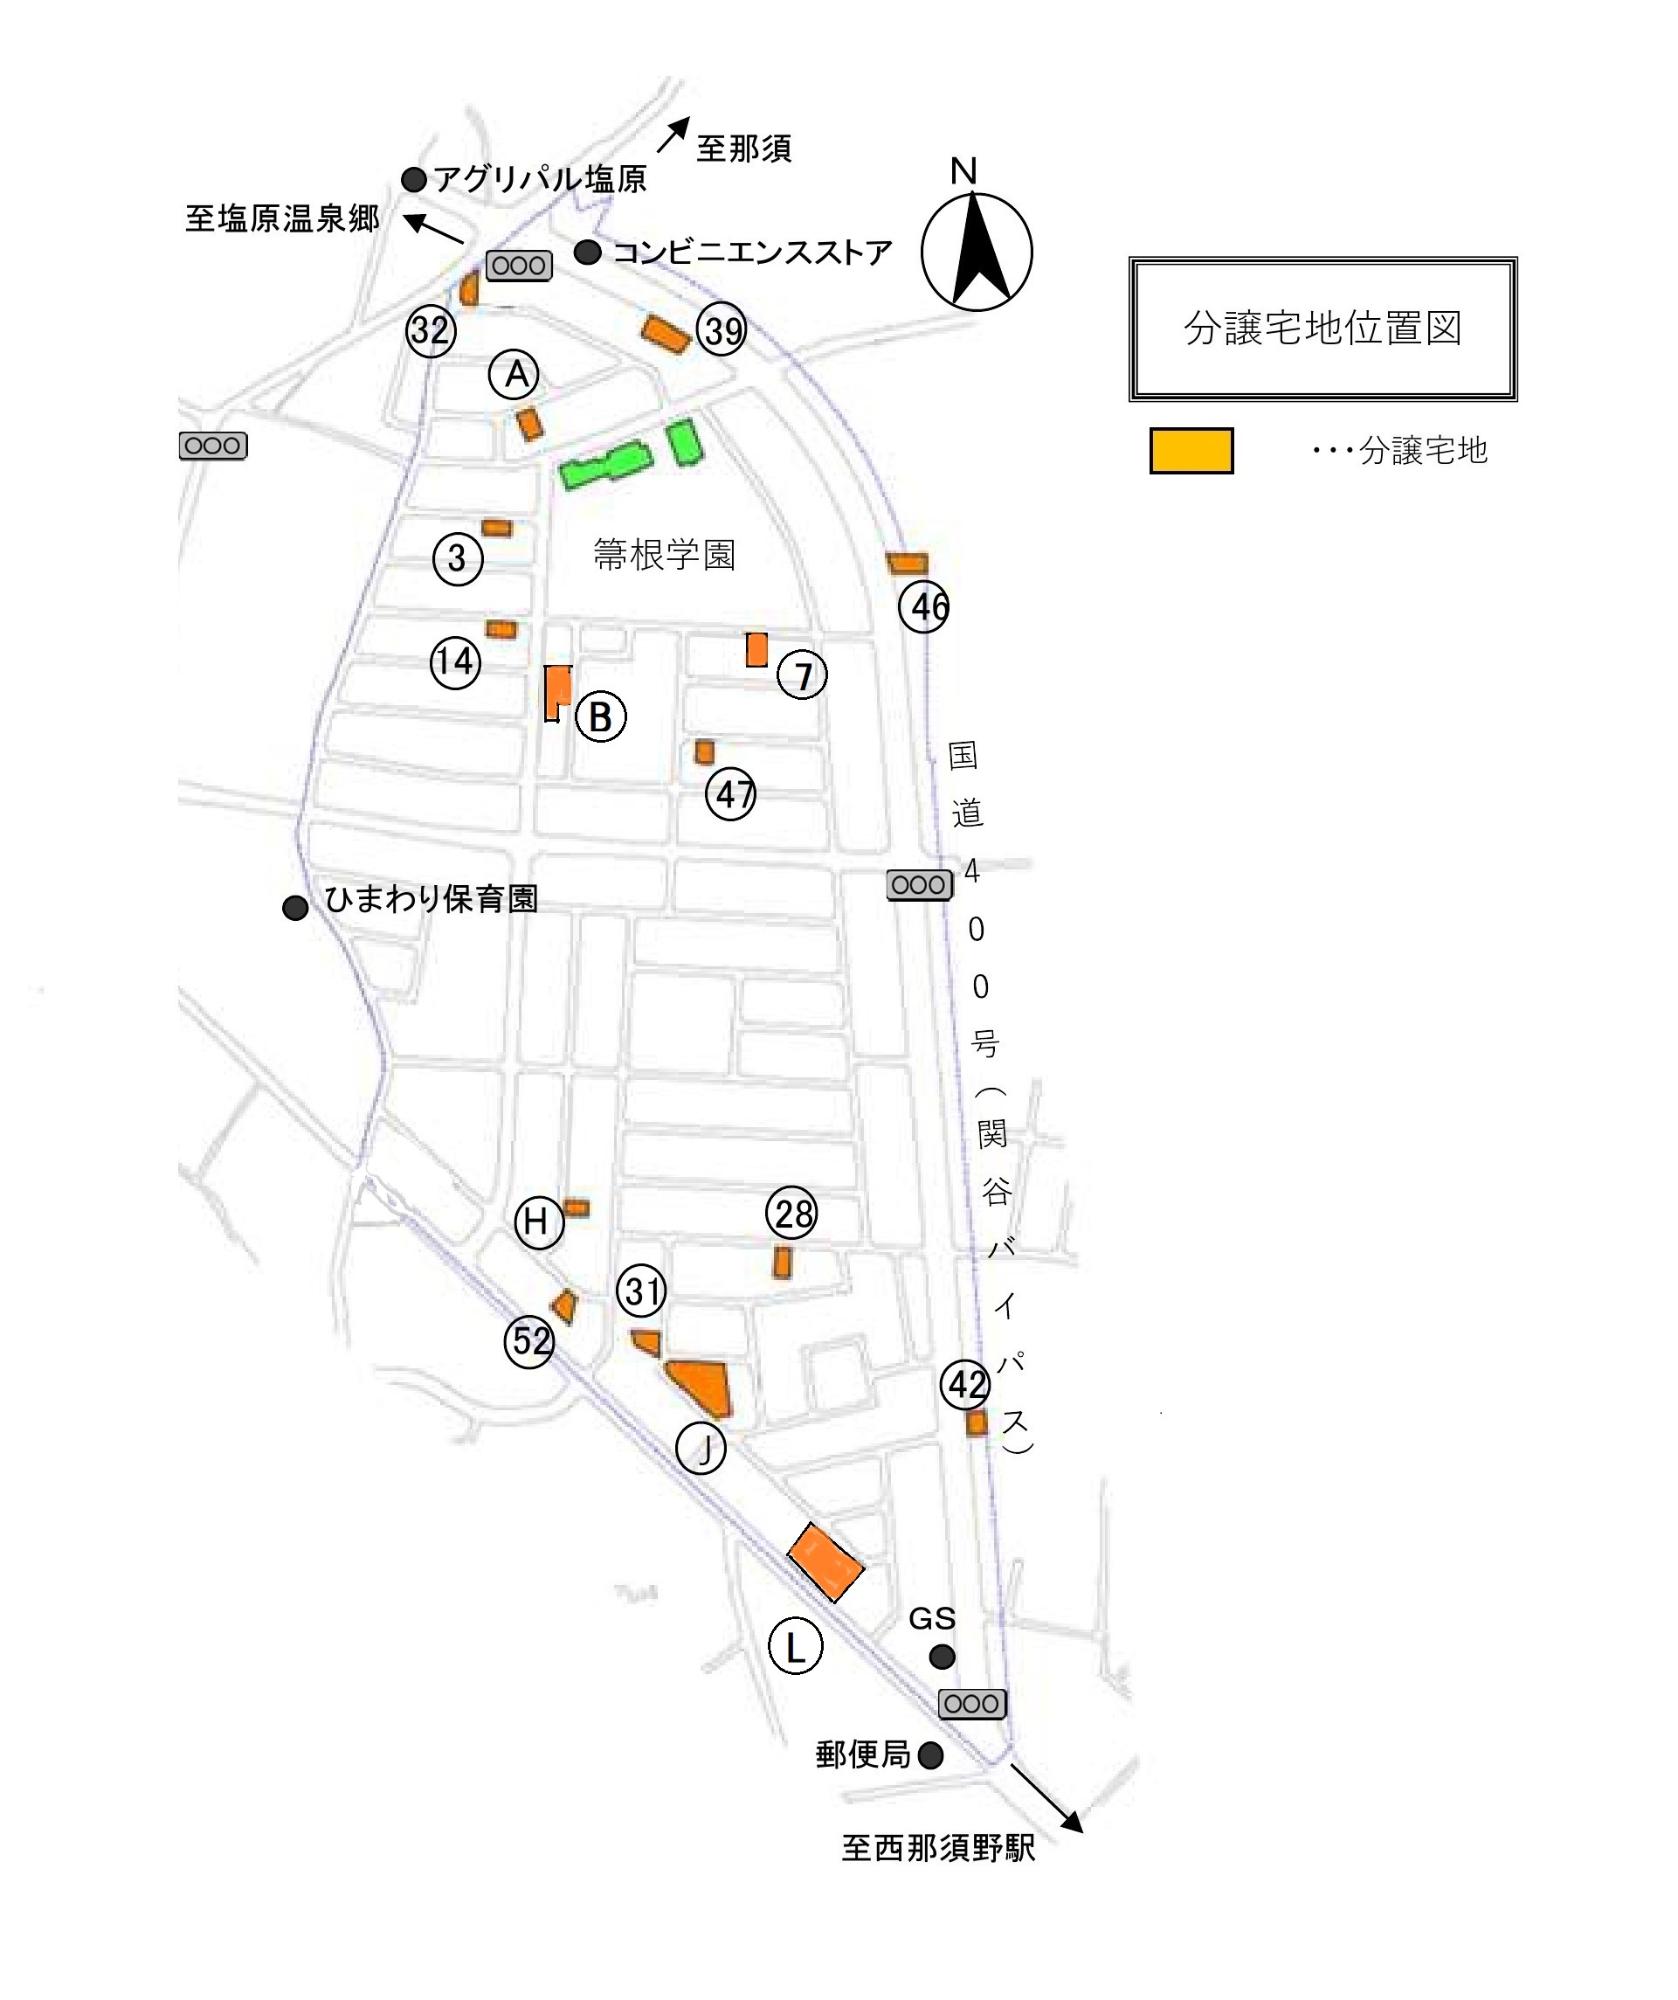 関谷地区分譲宅地の案内図